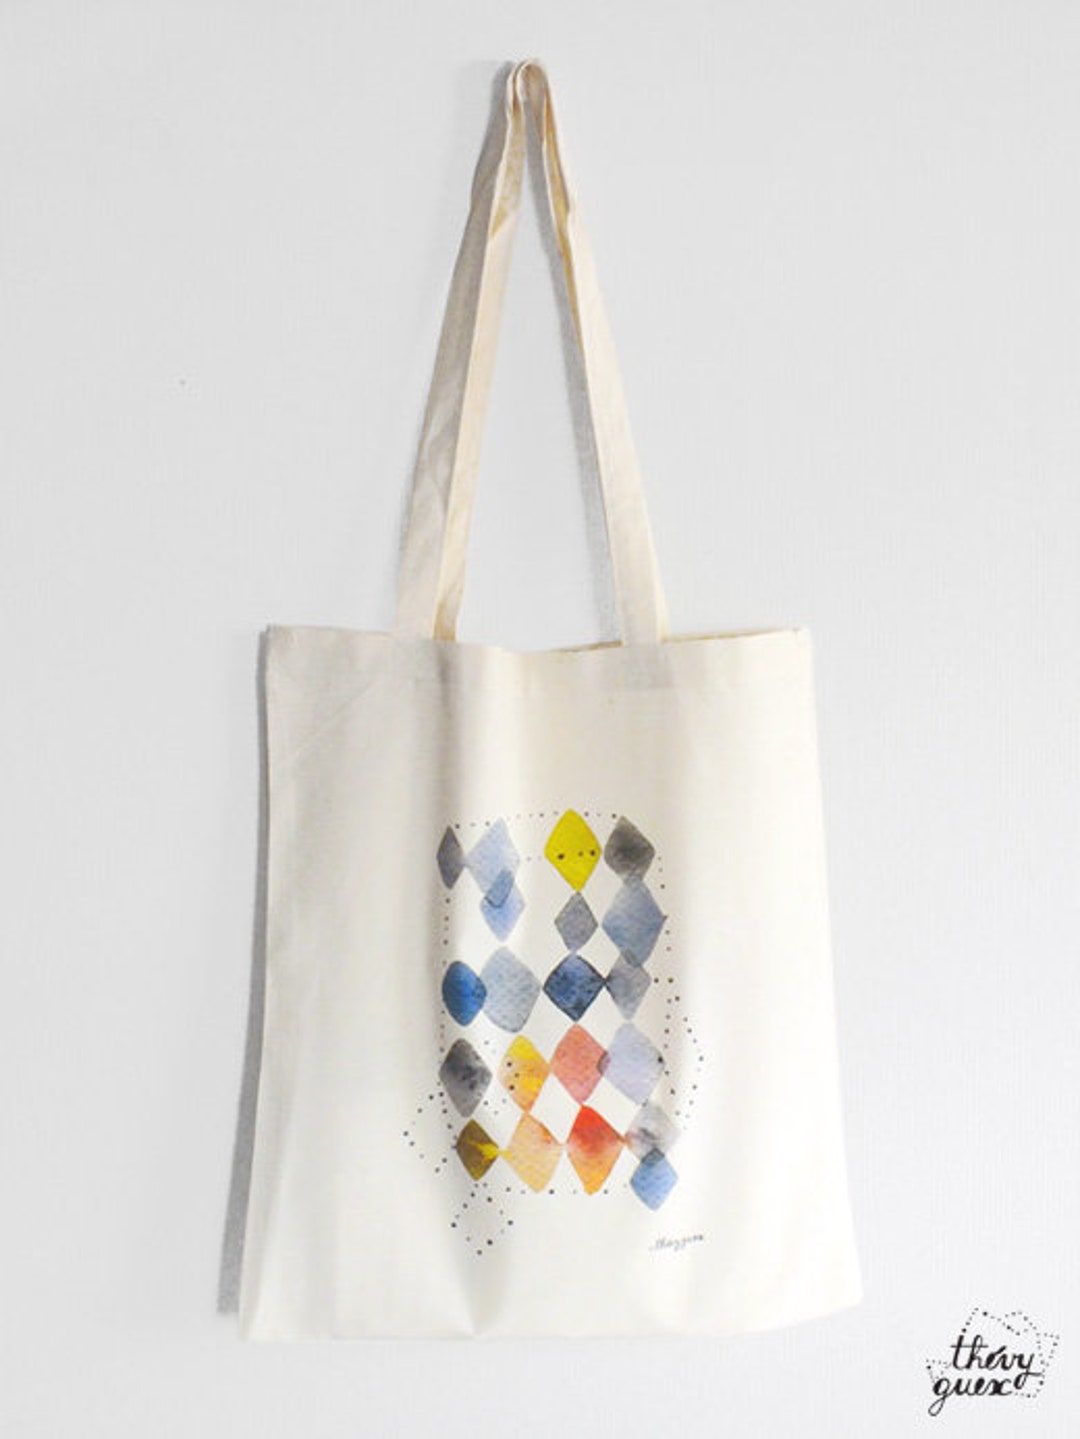 Fashion Small Tote Bag Rhombus Pattern Women's Handbag Space